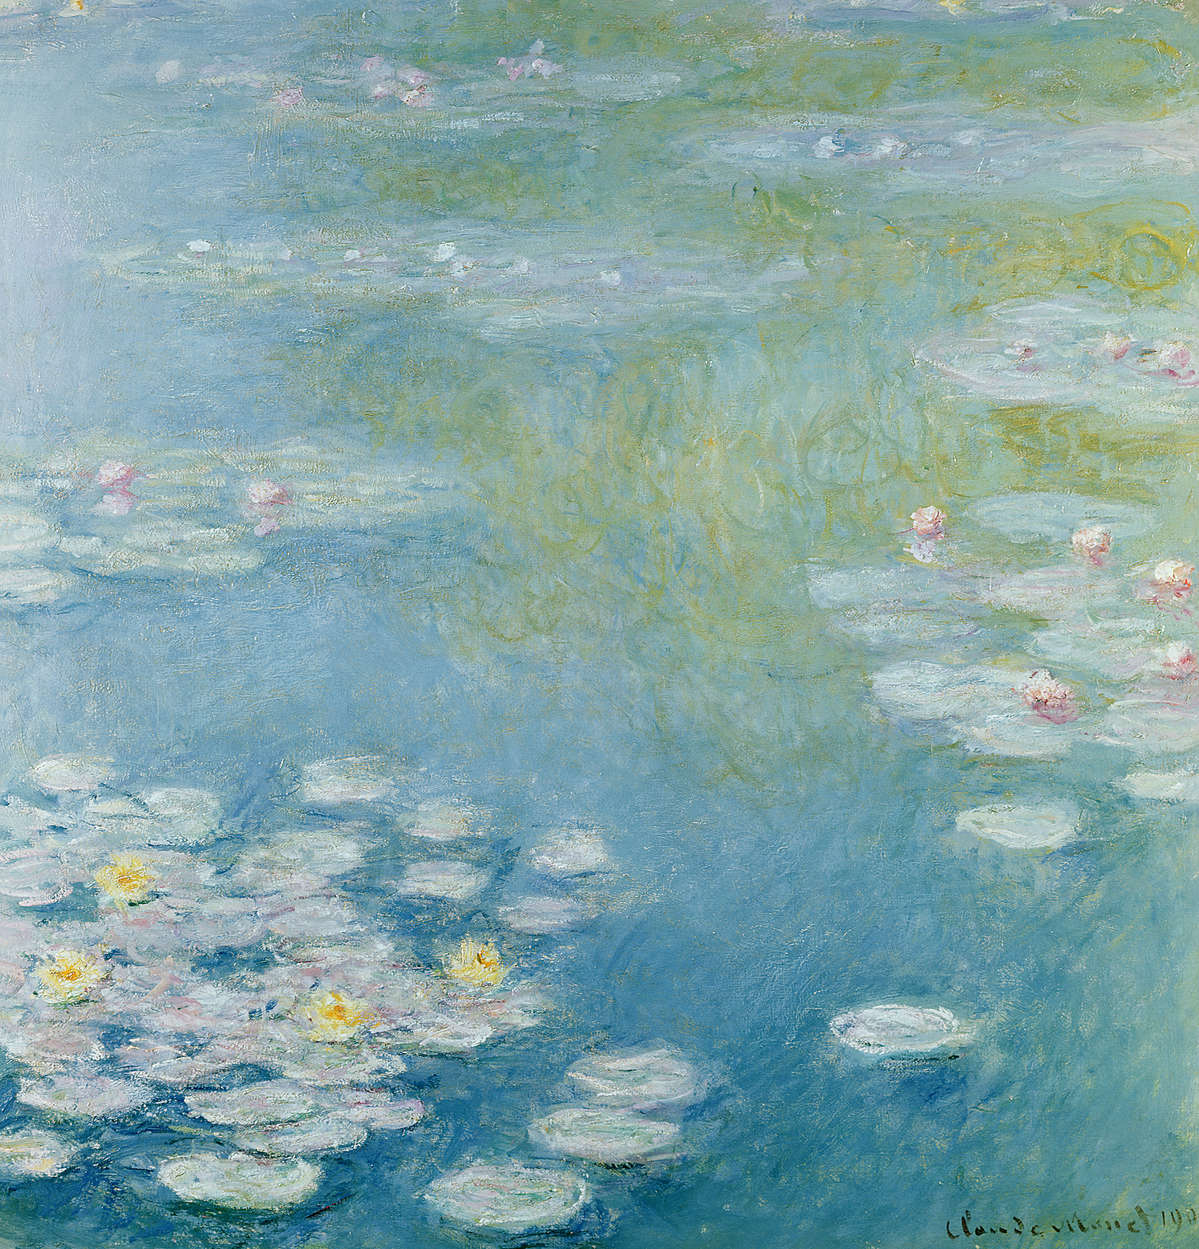             Fototapete "Nymphen in Giverny" von Claude Monet
        